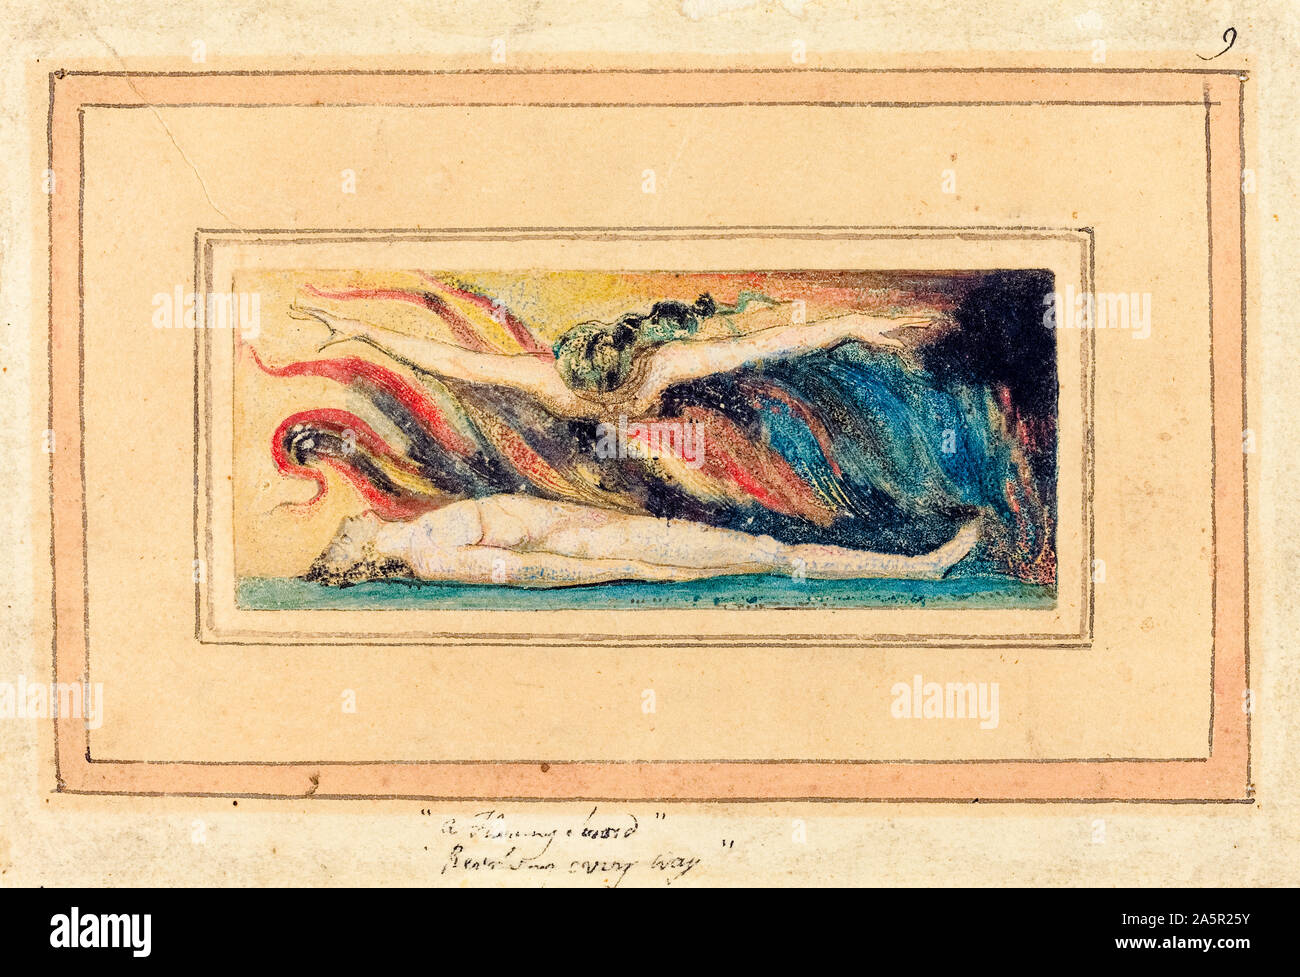 William Blake, die Seele schwebt über dem Körper, Illustration, 1796 Stockfoto